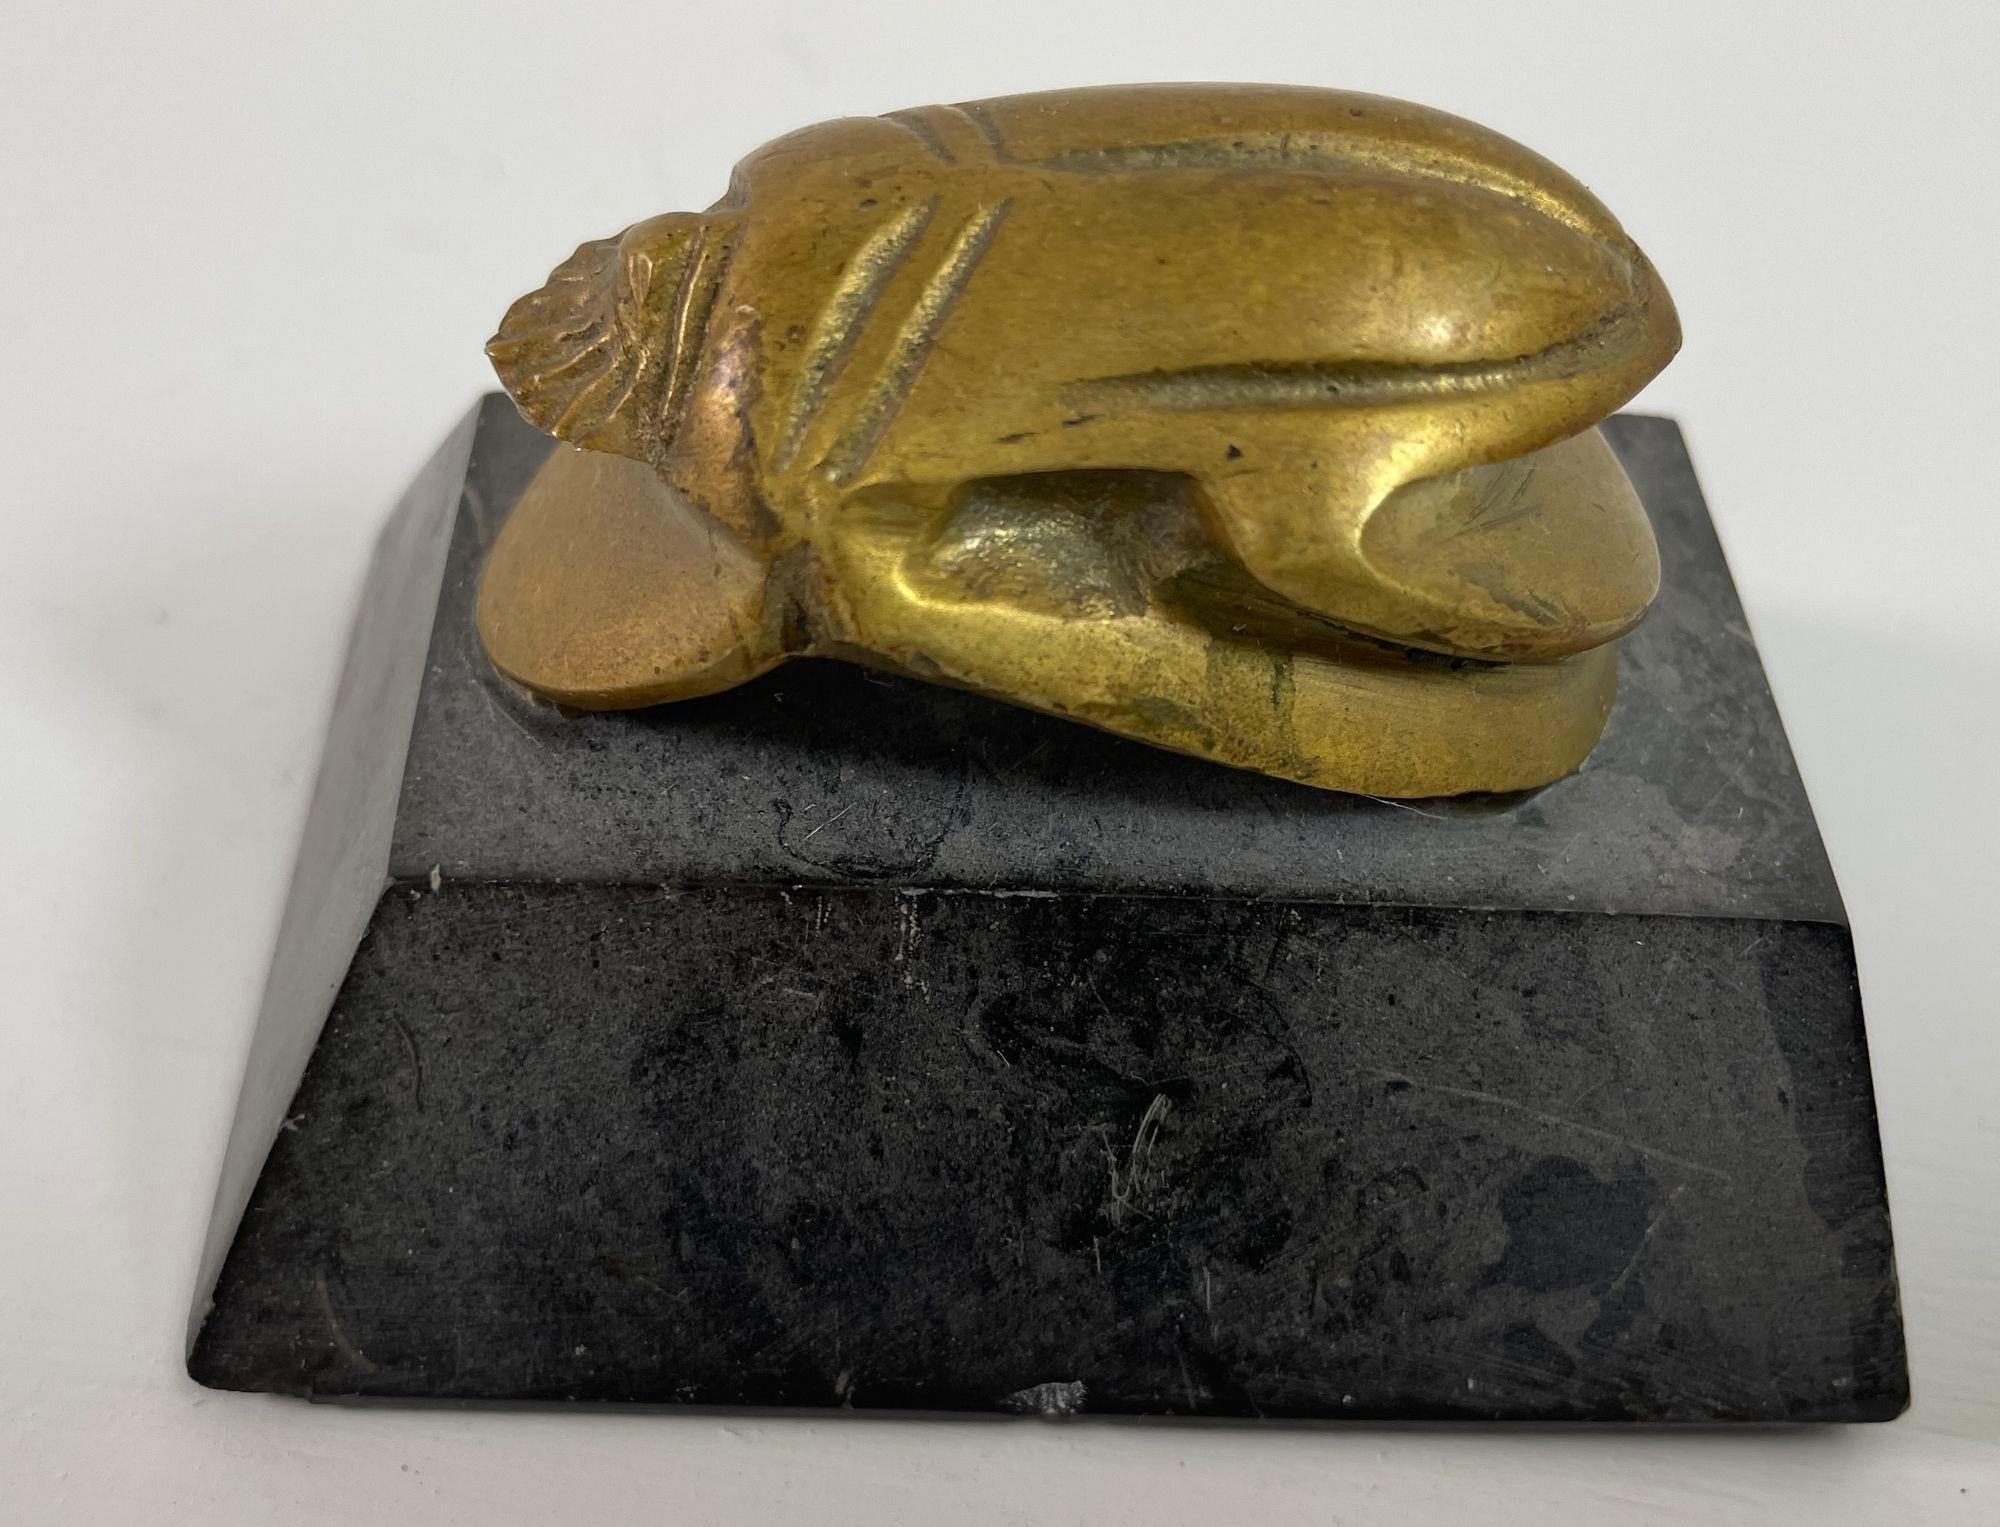 Scarabée égyptien Figurine en laiton sur socle en pierre d'après les antiquités du musée égyptien.Un ajout unique et magnifique à toute collection Art déco égyptienne.
Cette figurine de scarabée égyptien en laiton massif coulé sur un support en